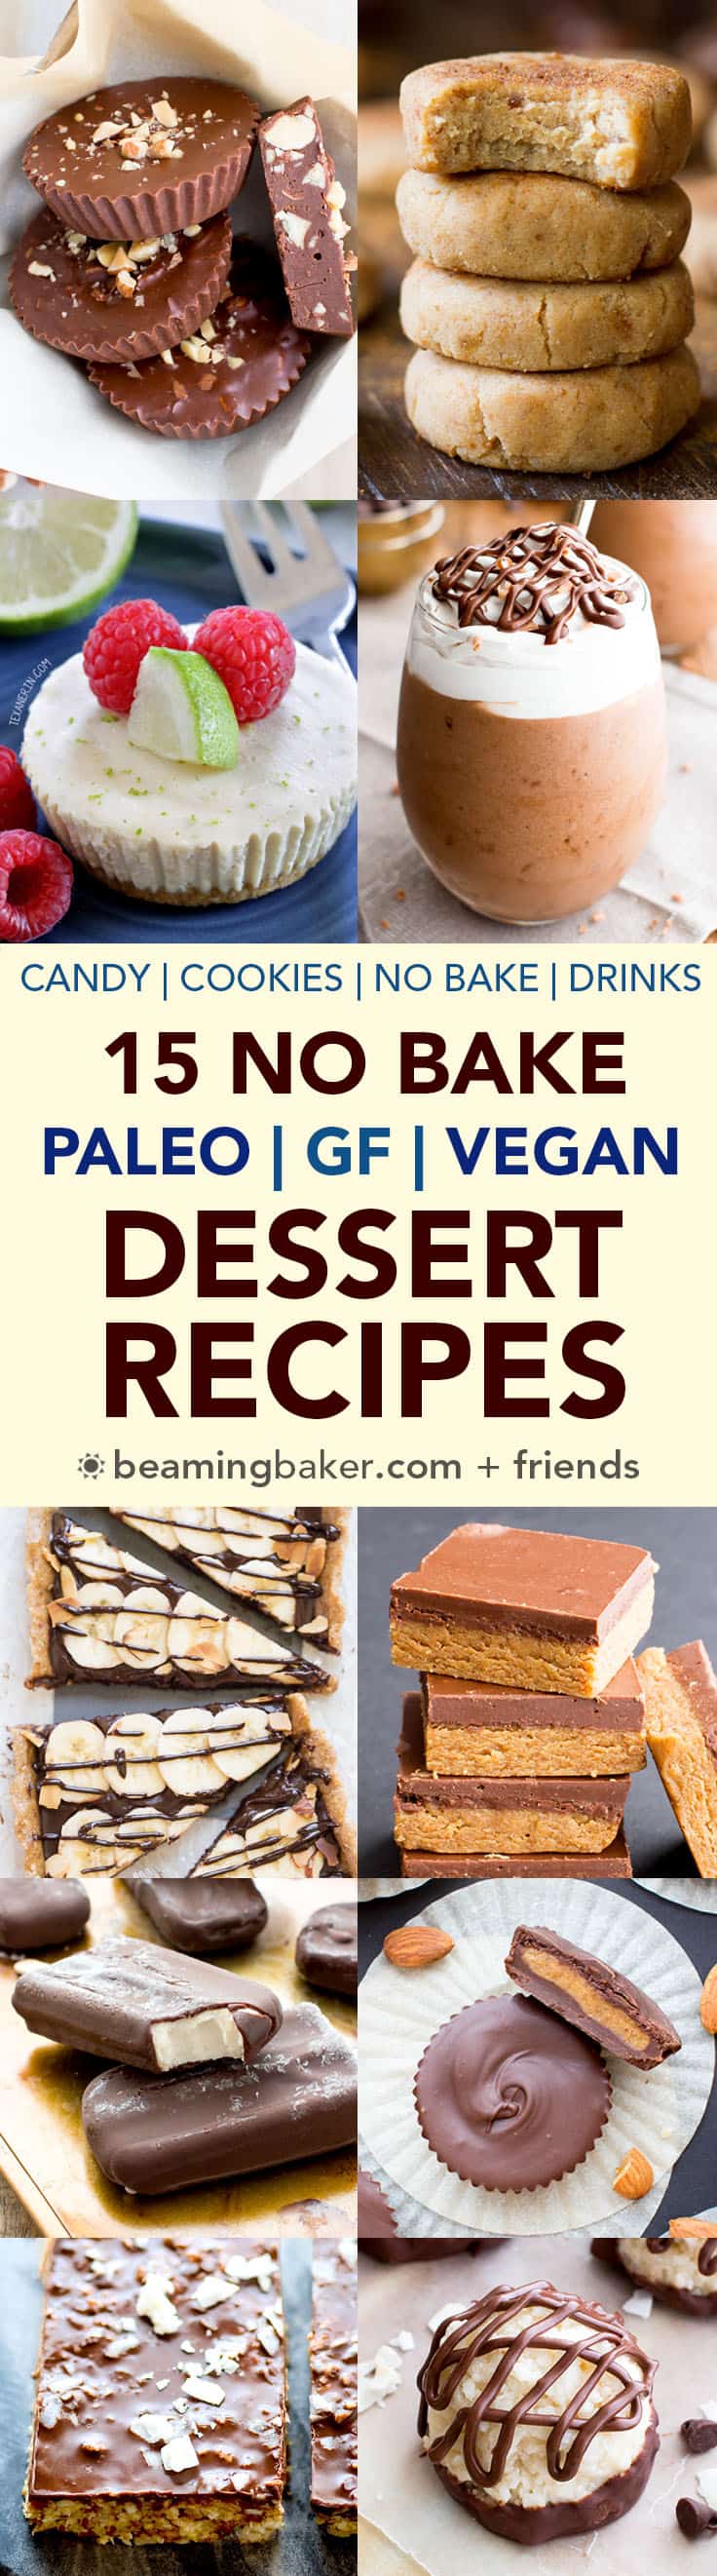 15 No Bake Paleo Vegan Desserts (Gluten-Free, Dairy-Free ...